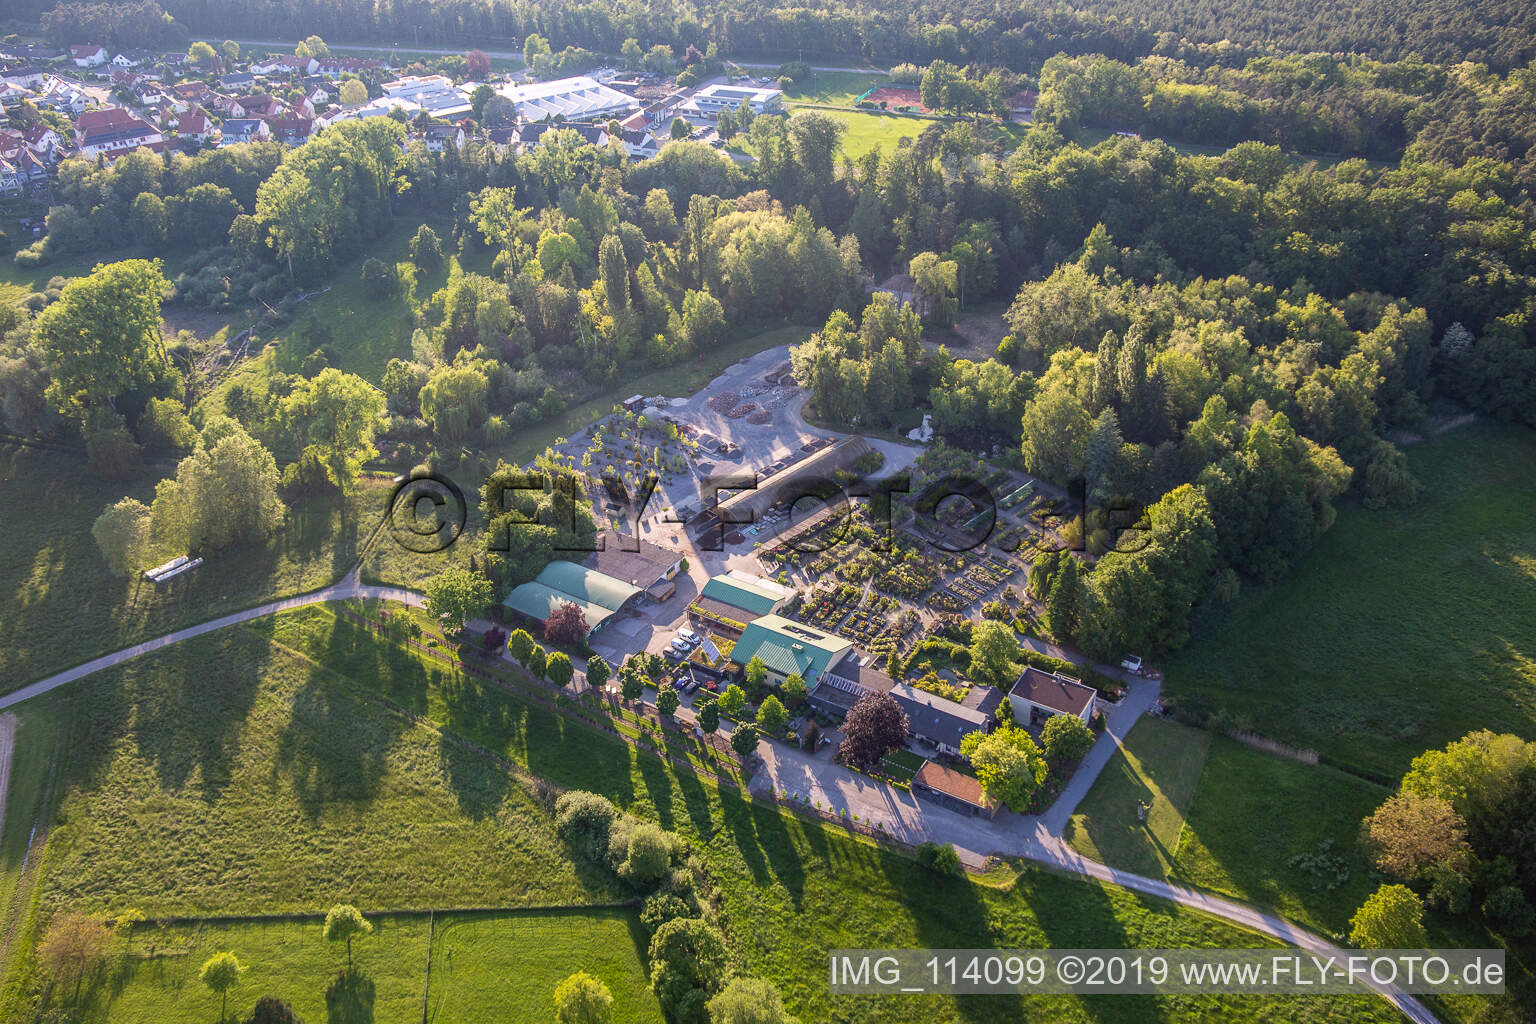 Pépinière Bienwald / Greentec à Berg dans le département Rhénanie-Palatinat, Allemagne du point de vue du drone